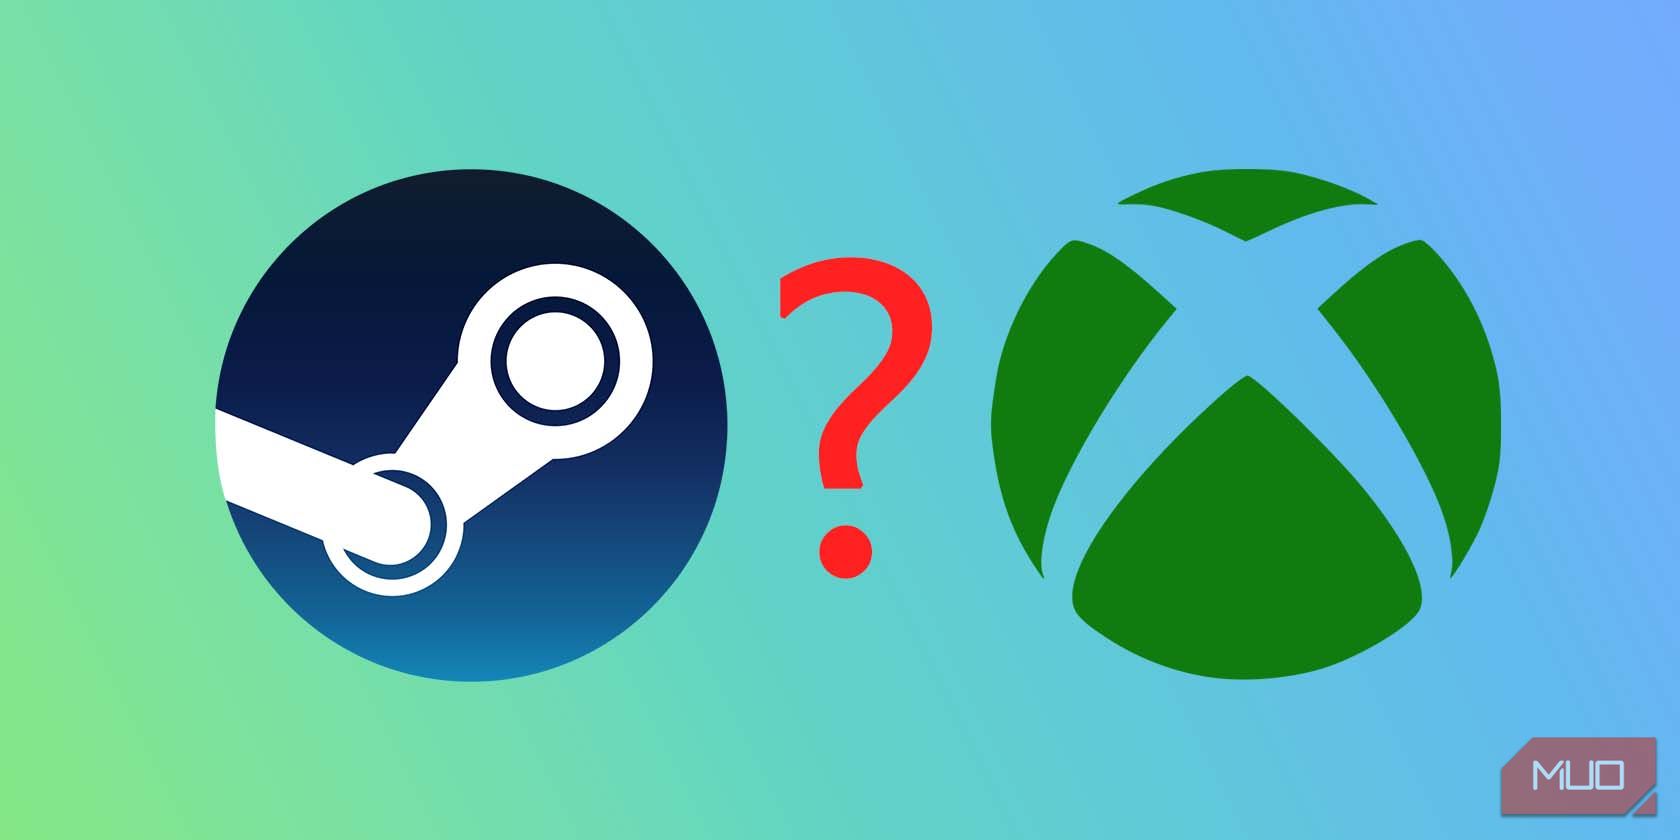 Logo Steam và Xbox có dấu chấm hỏi